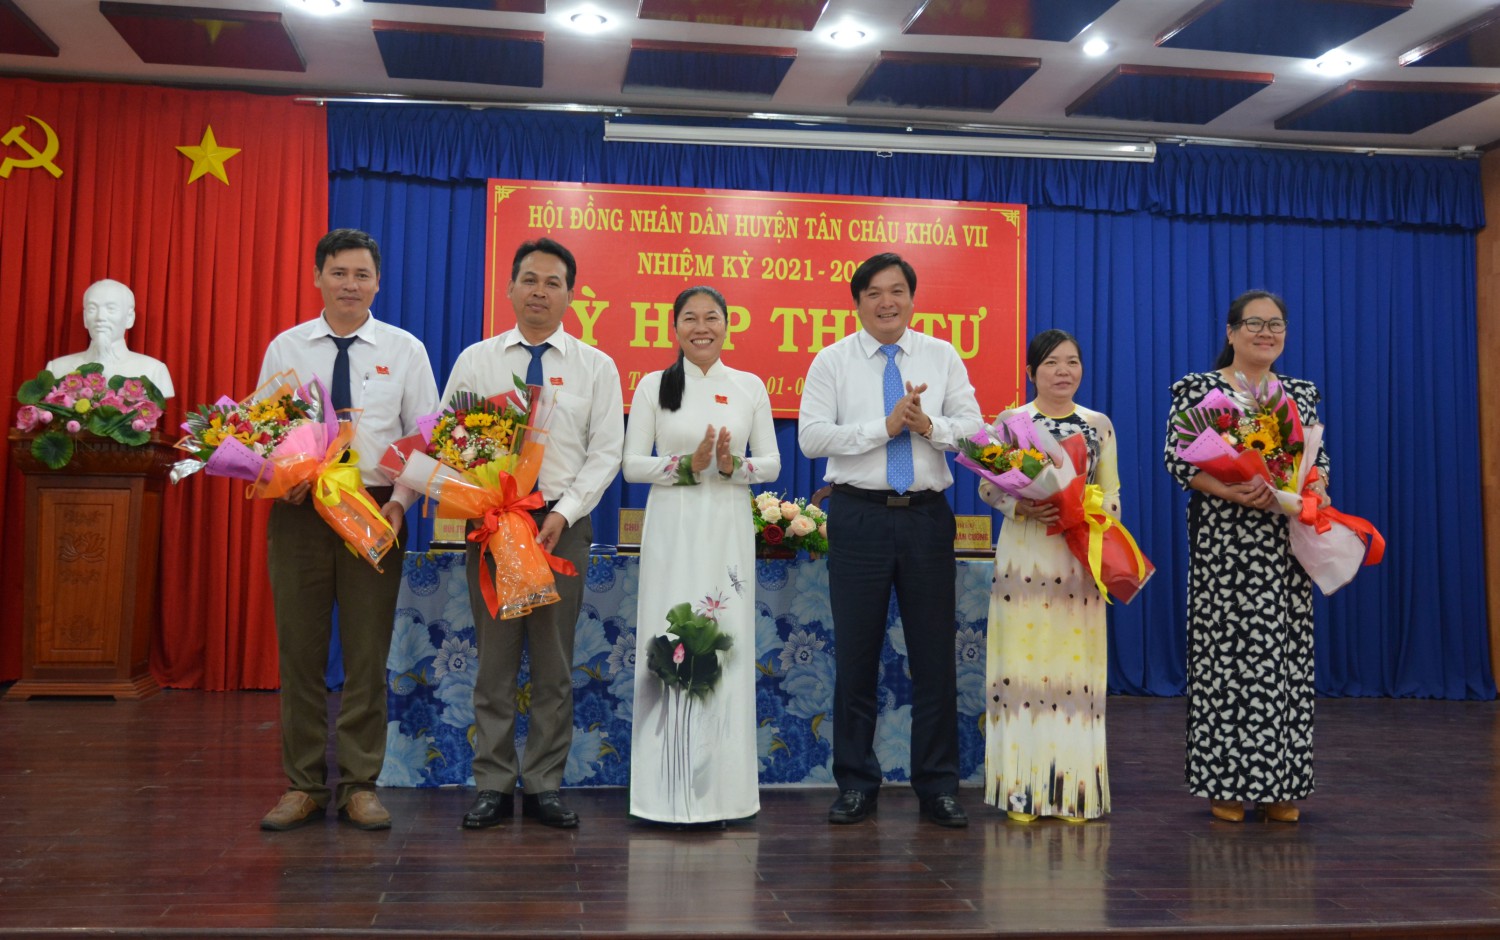 Hội đồng nhân dân huyện Tân Châu Bế mạc kỳ họp lần thứ 4